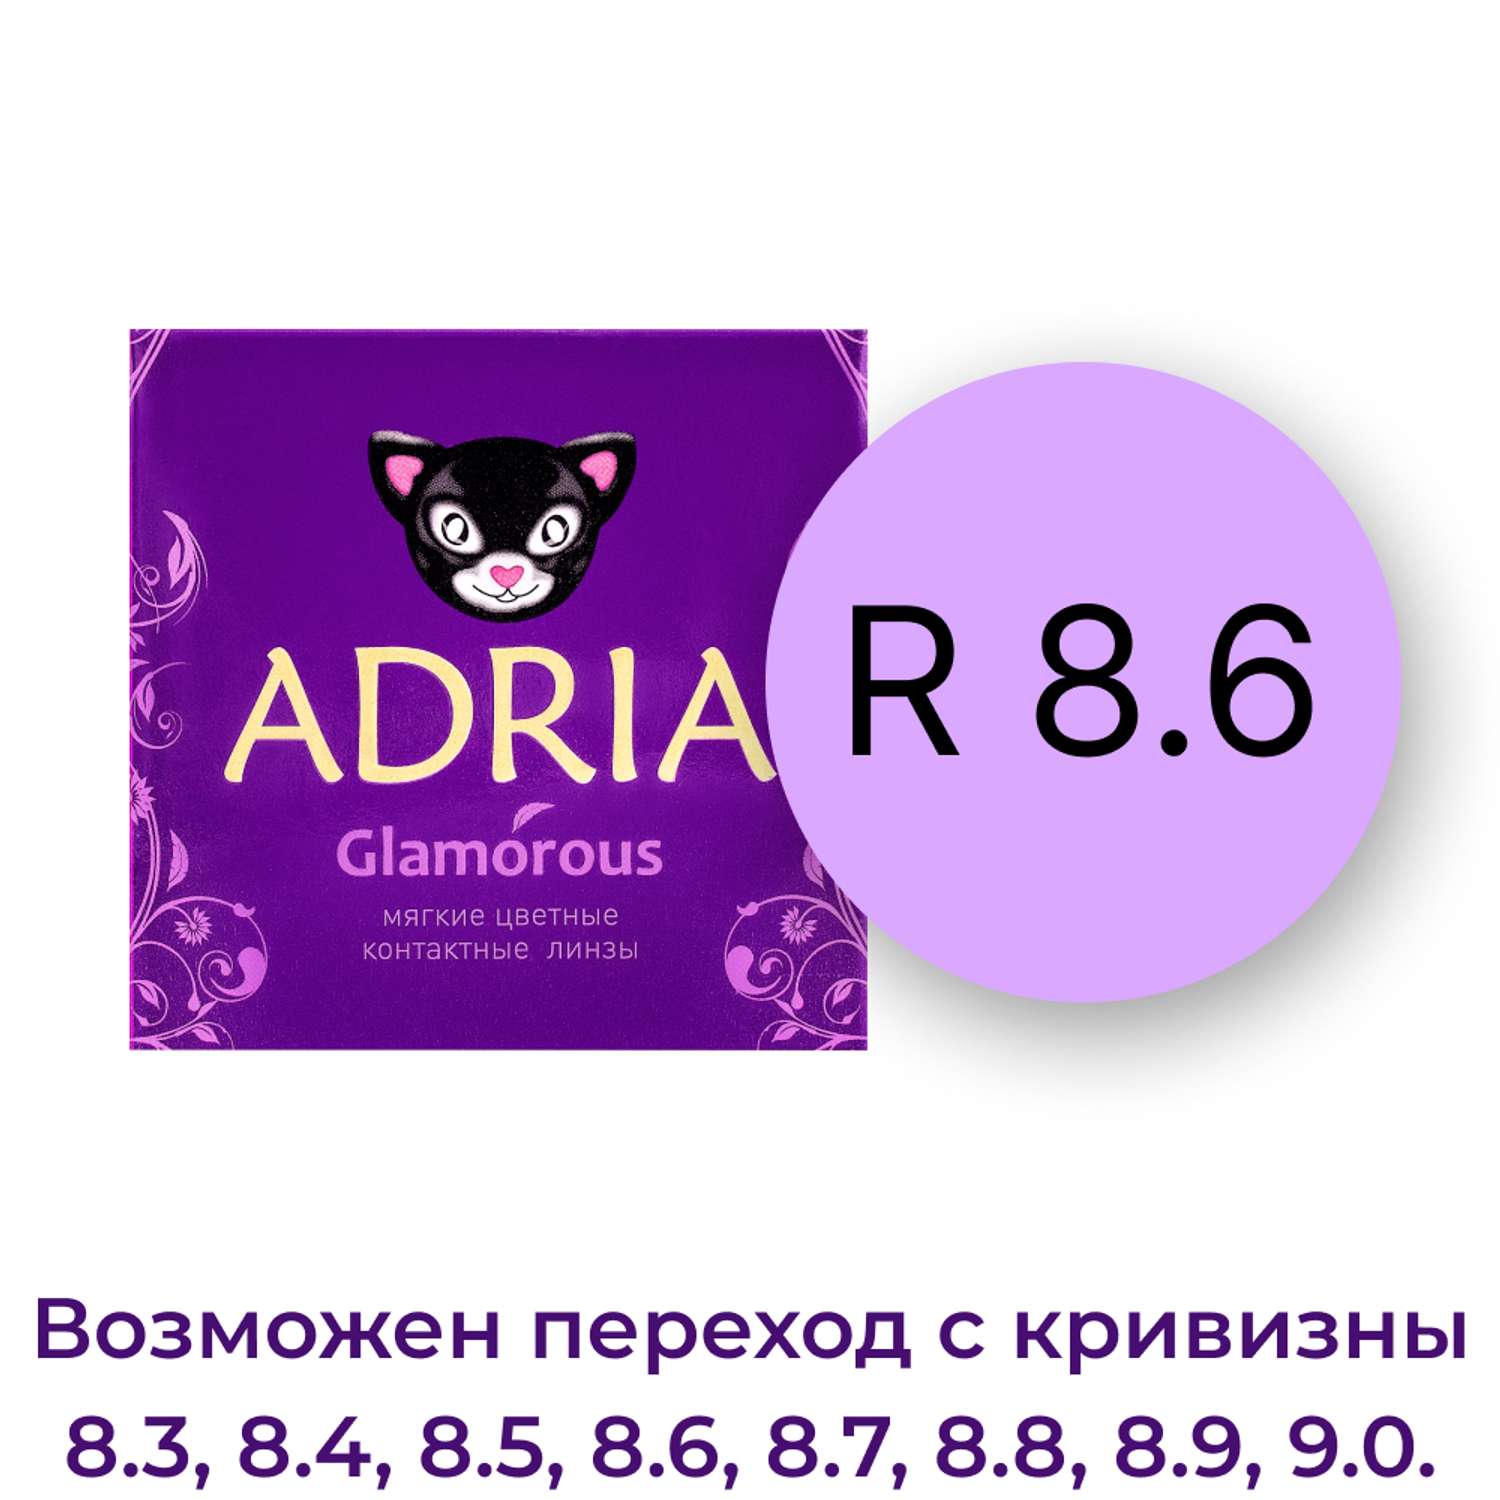 Цветные контактные линзы ADRIA Glamorous 2 линзы R 8.6 Pure Gold -0.00 - фото 4